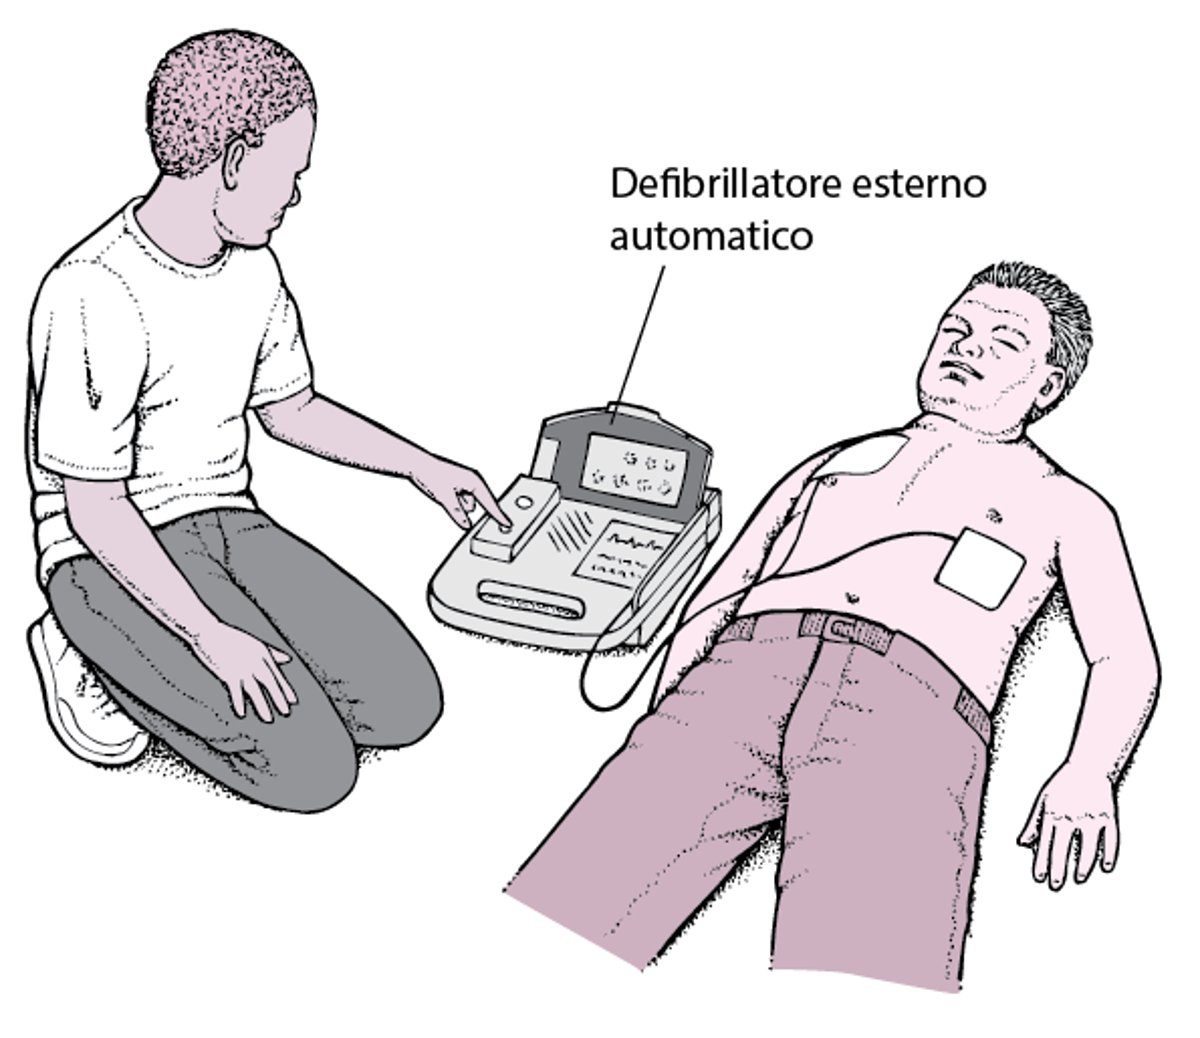 Defibrillatore automatico esterno: mettere in moto il cuore